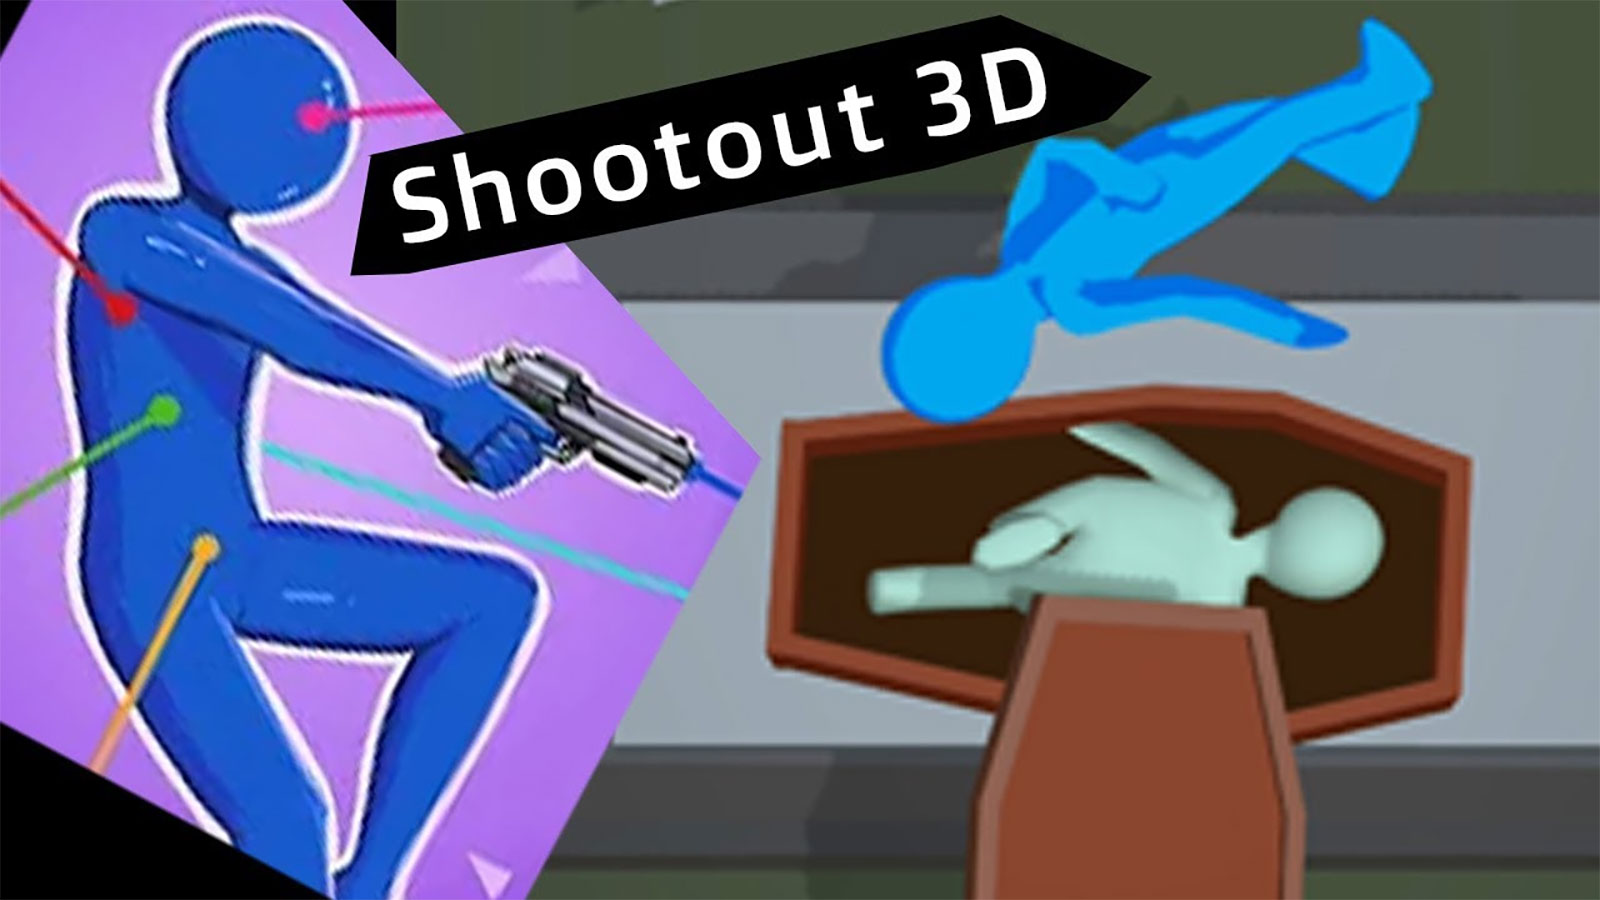 Shootout 3D Mod Apk